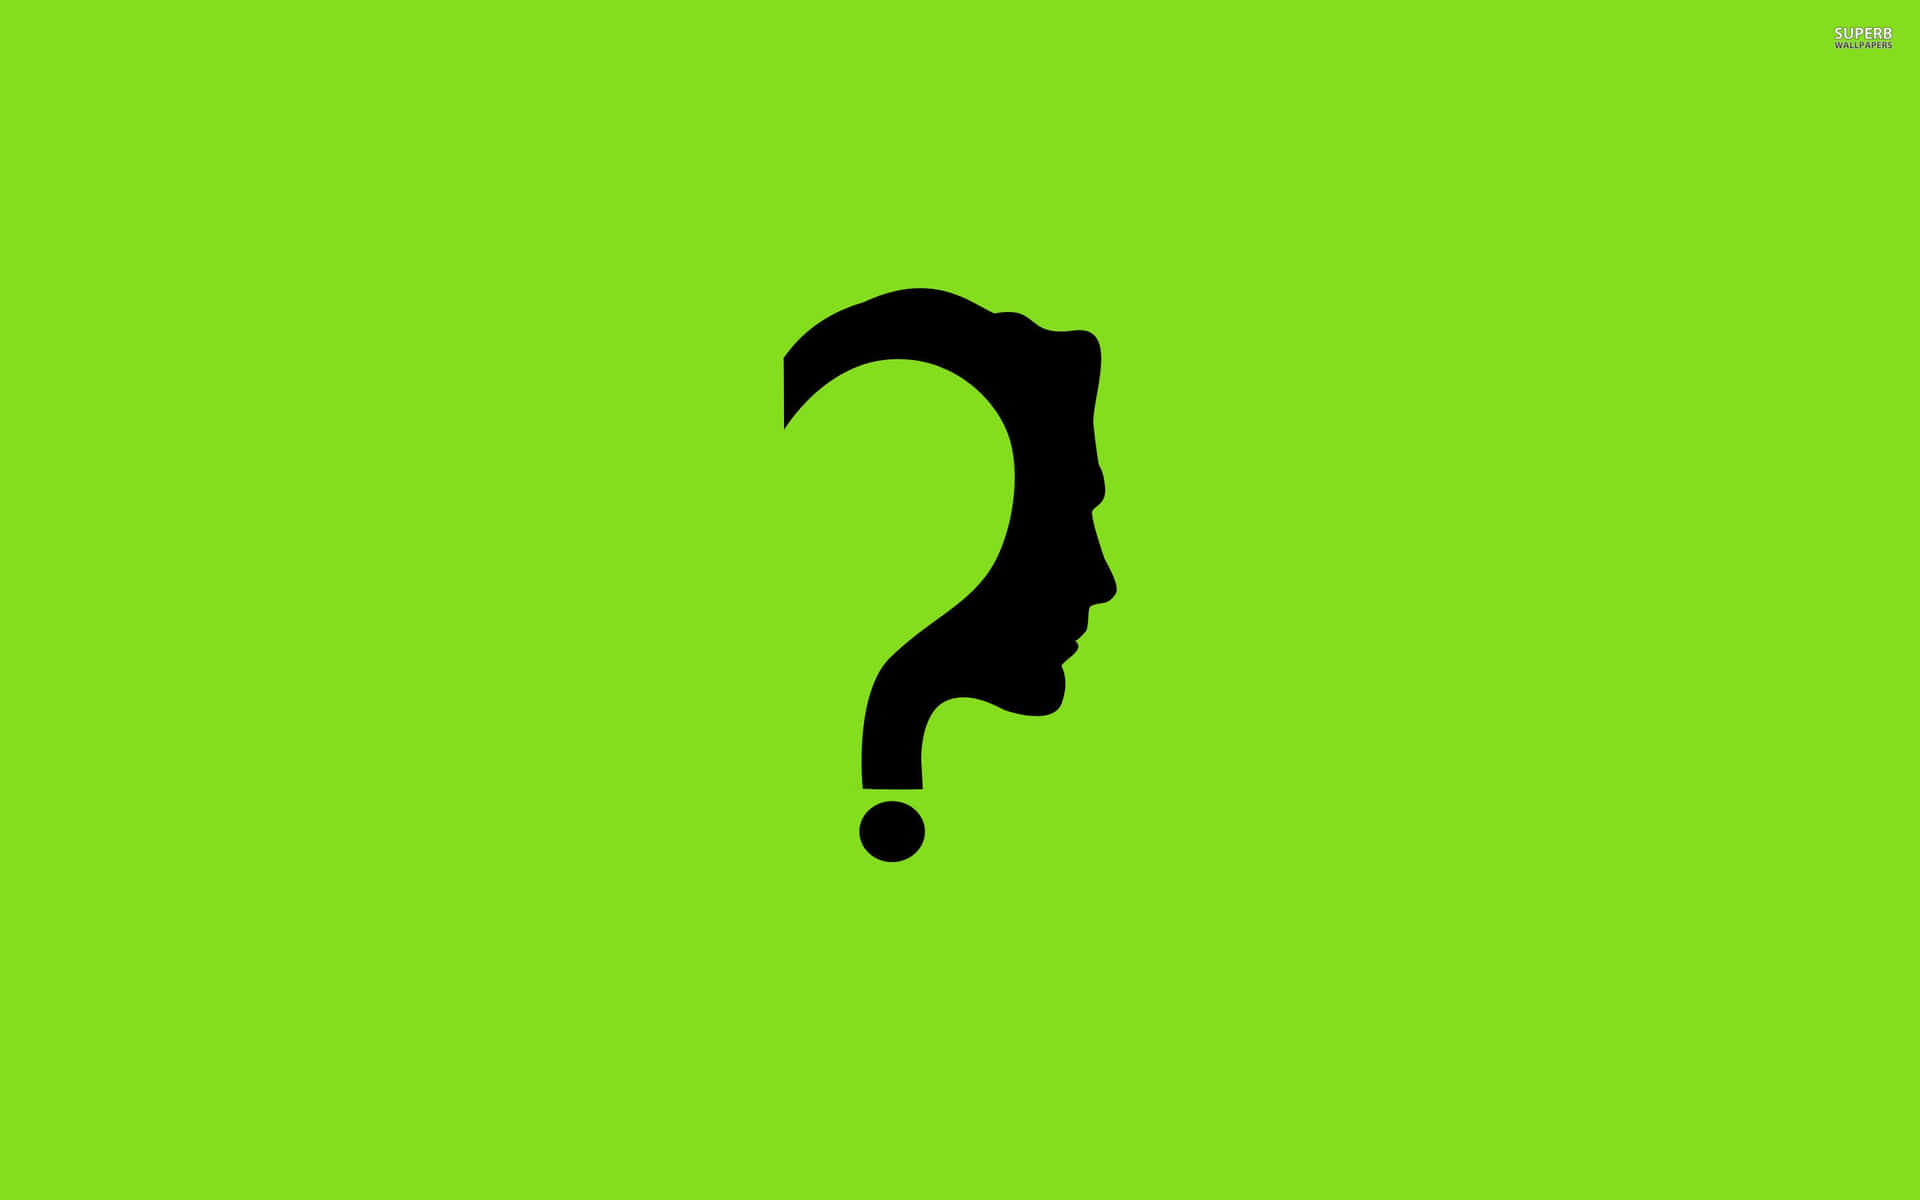 Eineschwarze Silhouette Einer Person Mit Einem Fragezeichen Auf Grünem Hintergrund.